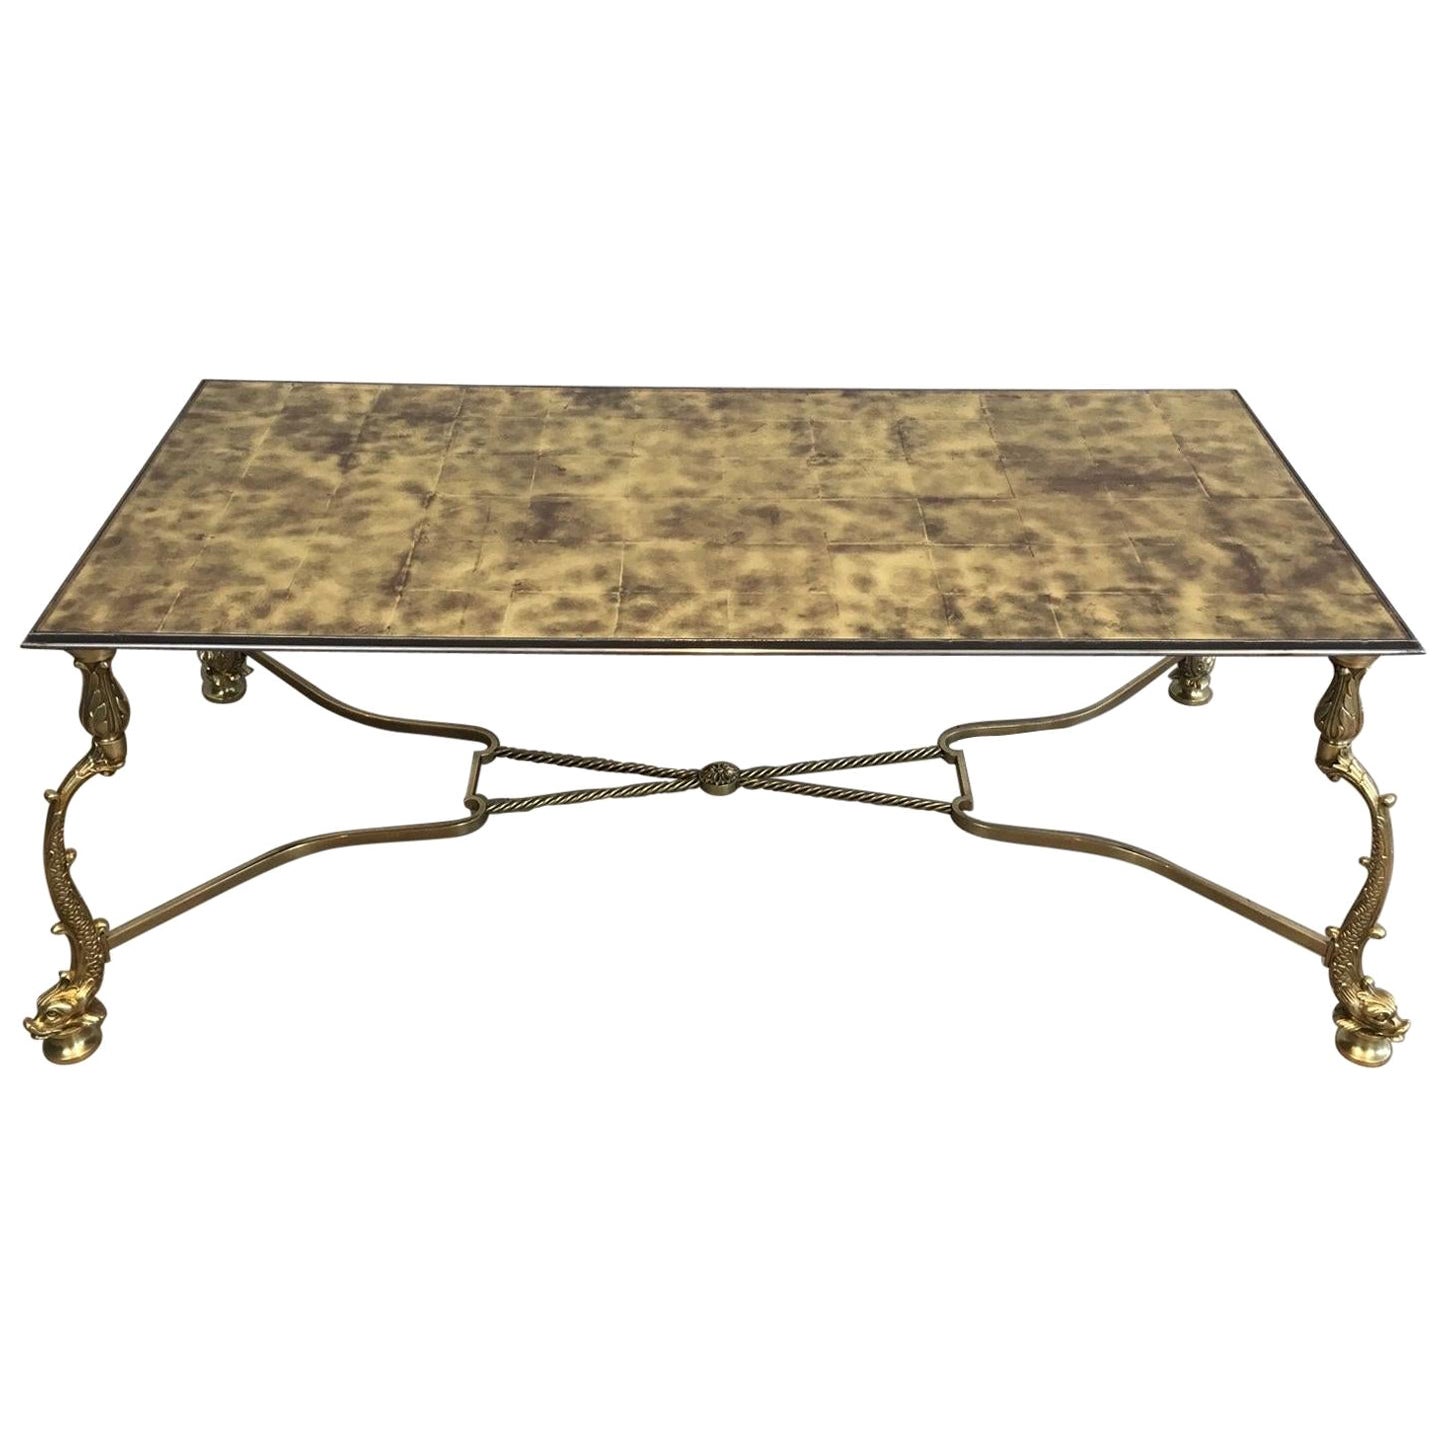 Table basse néoclassique rare avec magnifique plateau en verre doré représentant des dauphins